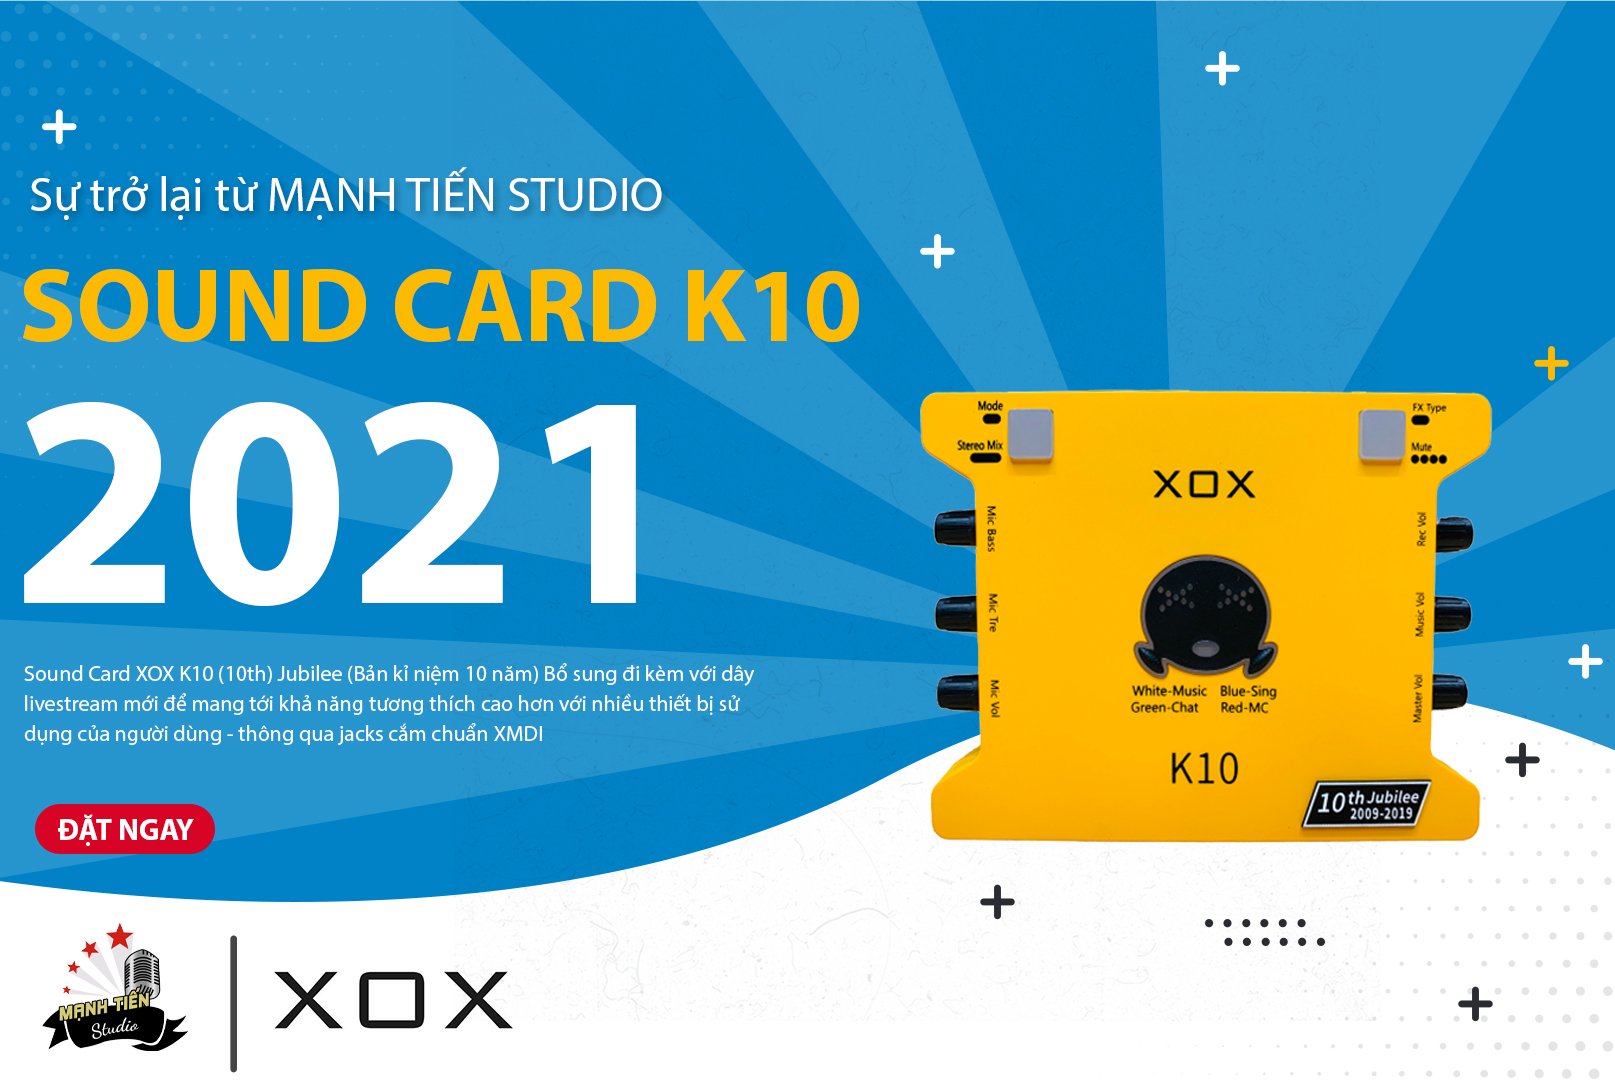 Sound card XOX K10 phiên bản 10th jubilee - Soundcard nâng cấp mới nhất đến từ XOX - Đầy đủ các chức năng, chế độ, hiệu ứng - Kết hợp được hầu hết các loại micro thu âm, sử dụng được cho cả điện thoại và máy tính - Chính hãng